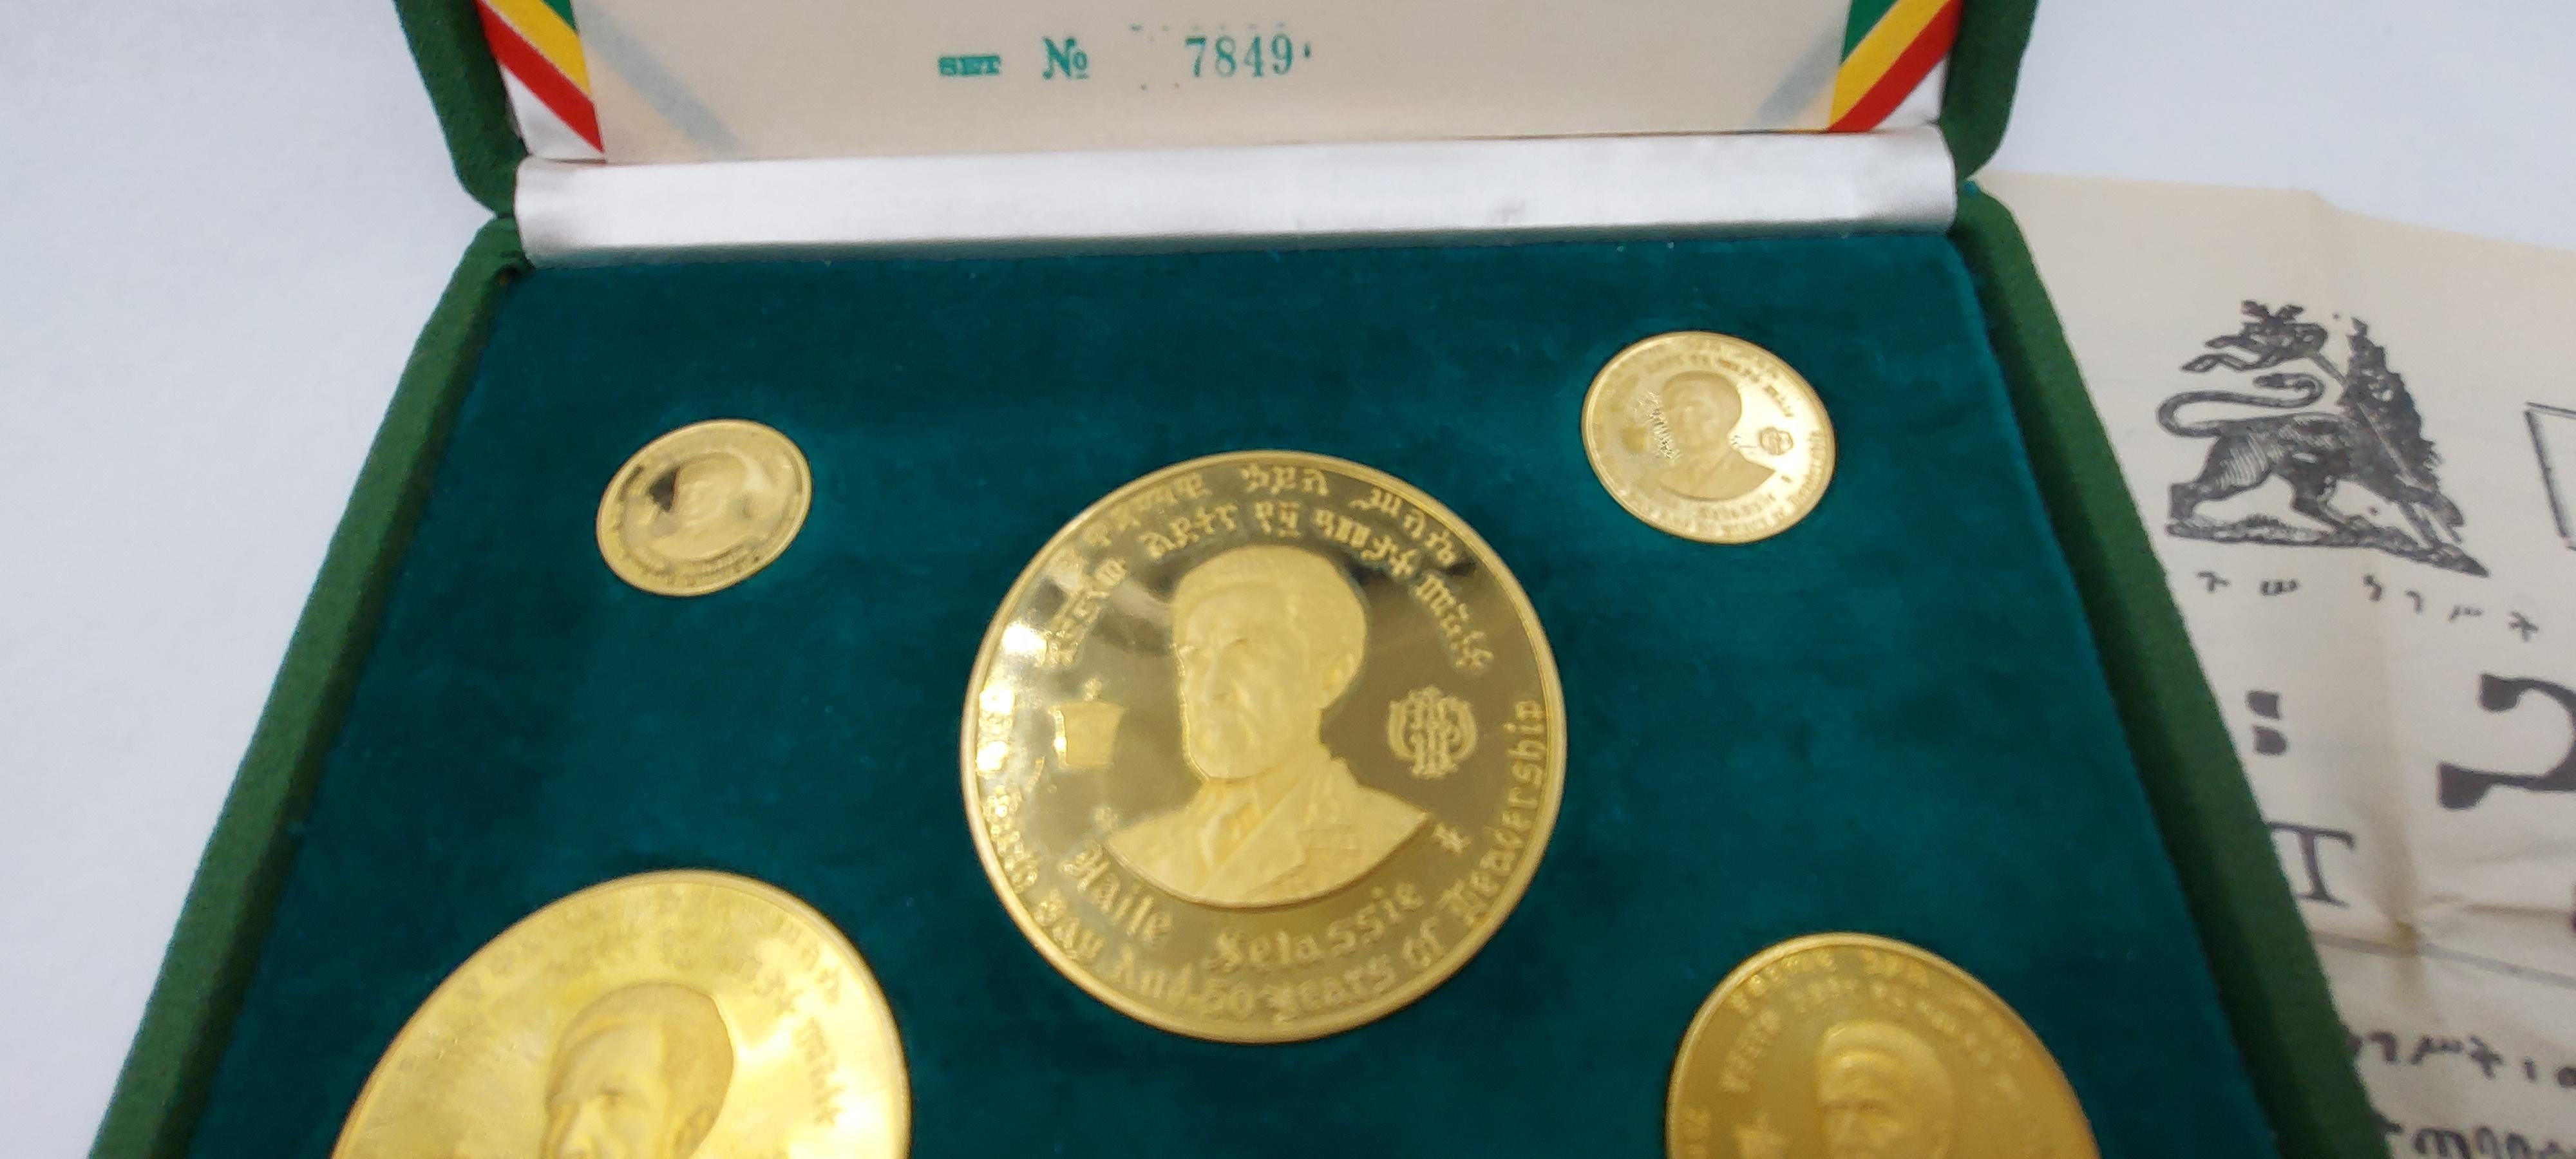 Prächtiger Münzsatz 1966 Äthiopien Proof 22 Karat Gelbgold (152,80 Gramm). Der Durchmesser der größten Münze beträgt 
55 Millimeter, die kleinste Münze hat einen Durchmesser von 20 Millimetern. Markenzeichen. Der Goldmünzensatz feiert 
den 75.